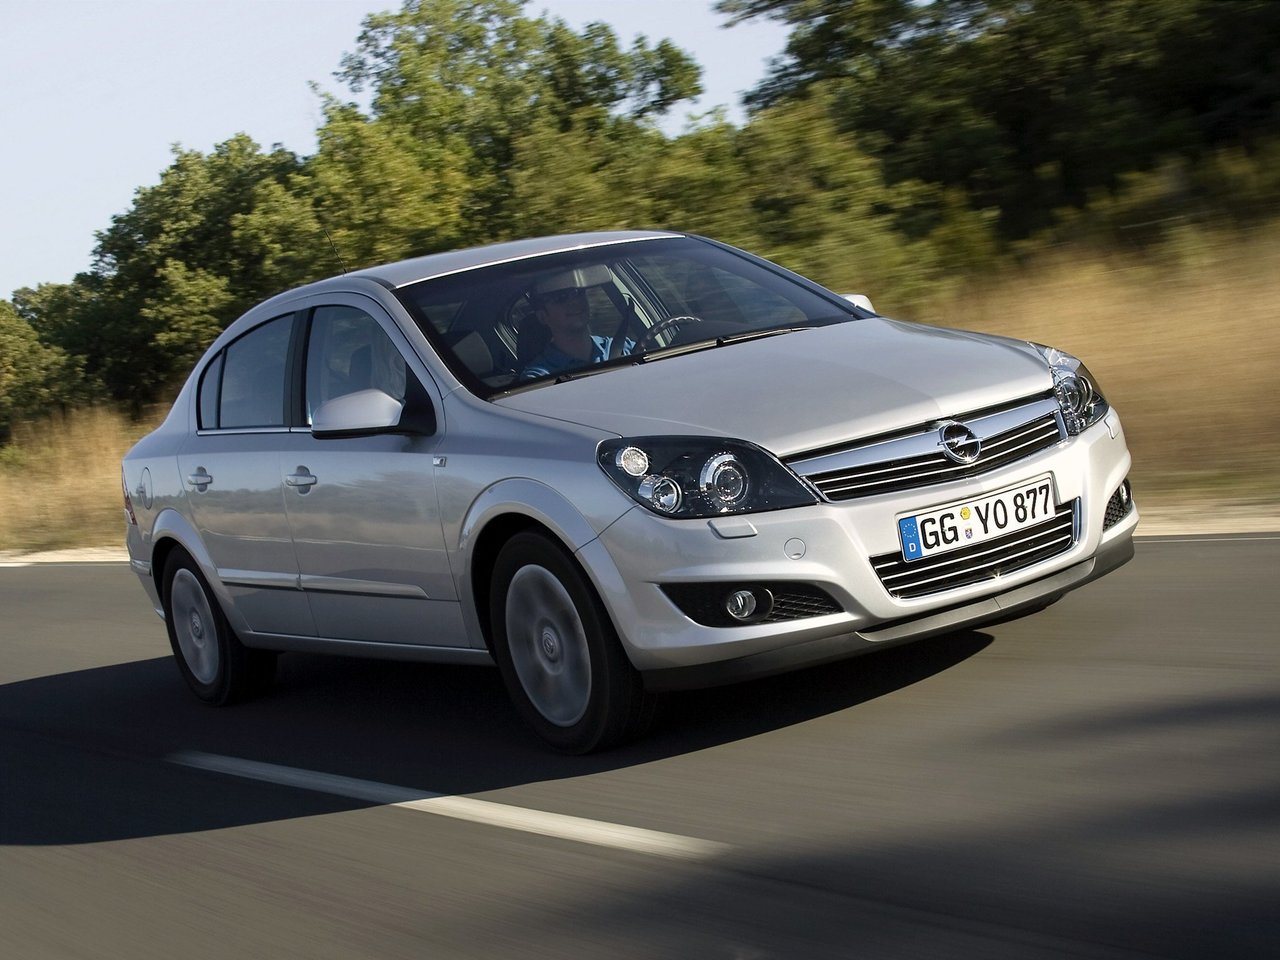 Расход газа четырёх комплектаций седана Opel Astra. Разница стоимости заправки газом и бензином. Автономный пробег до и после установки ГБО.